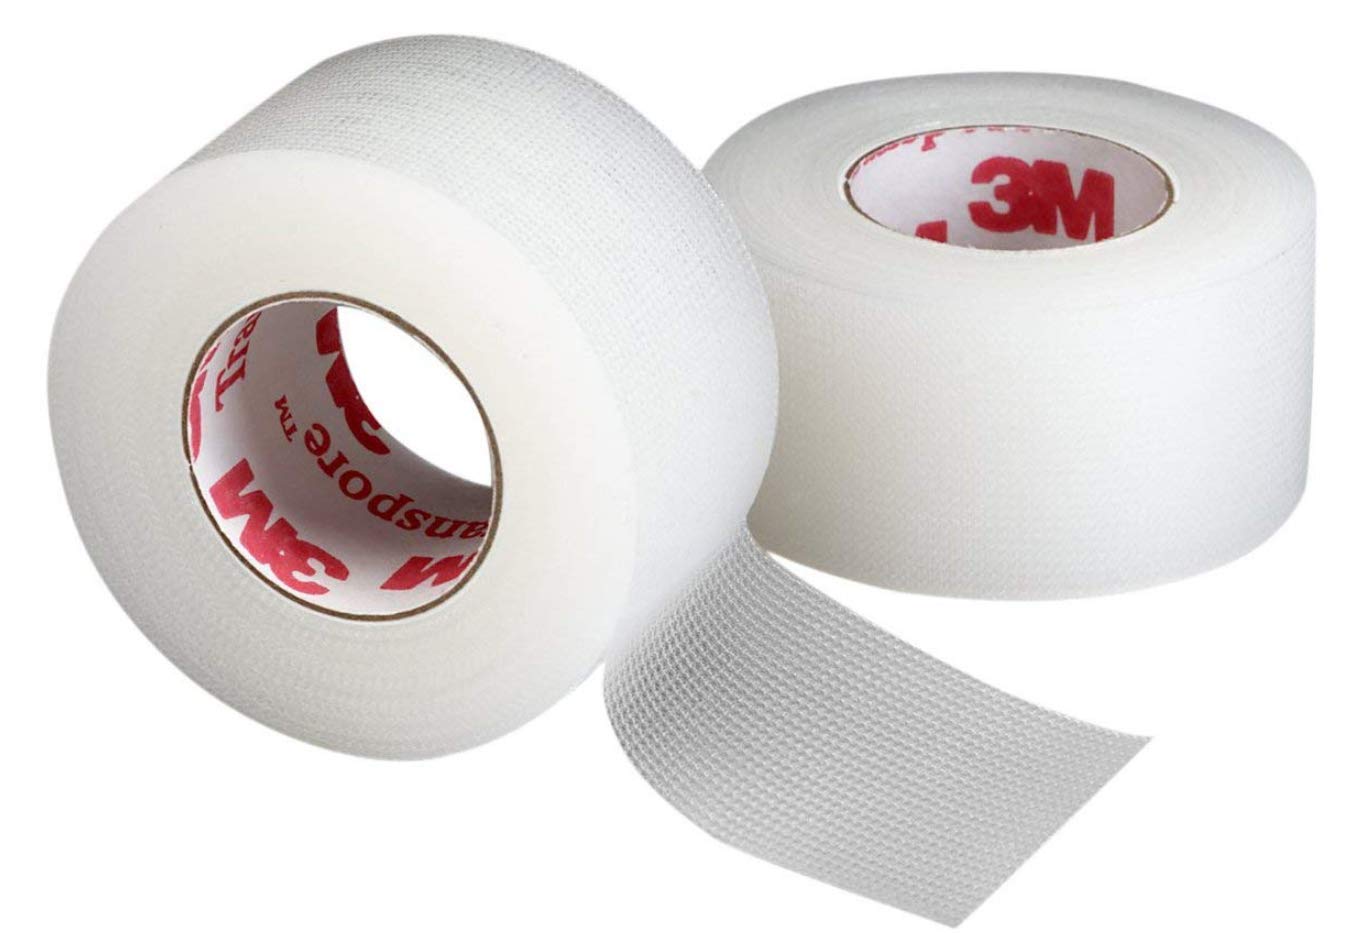 3M MRO Tapes, Sealants and Adhesives Distributor